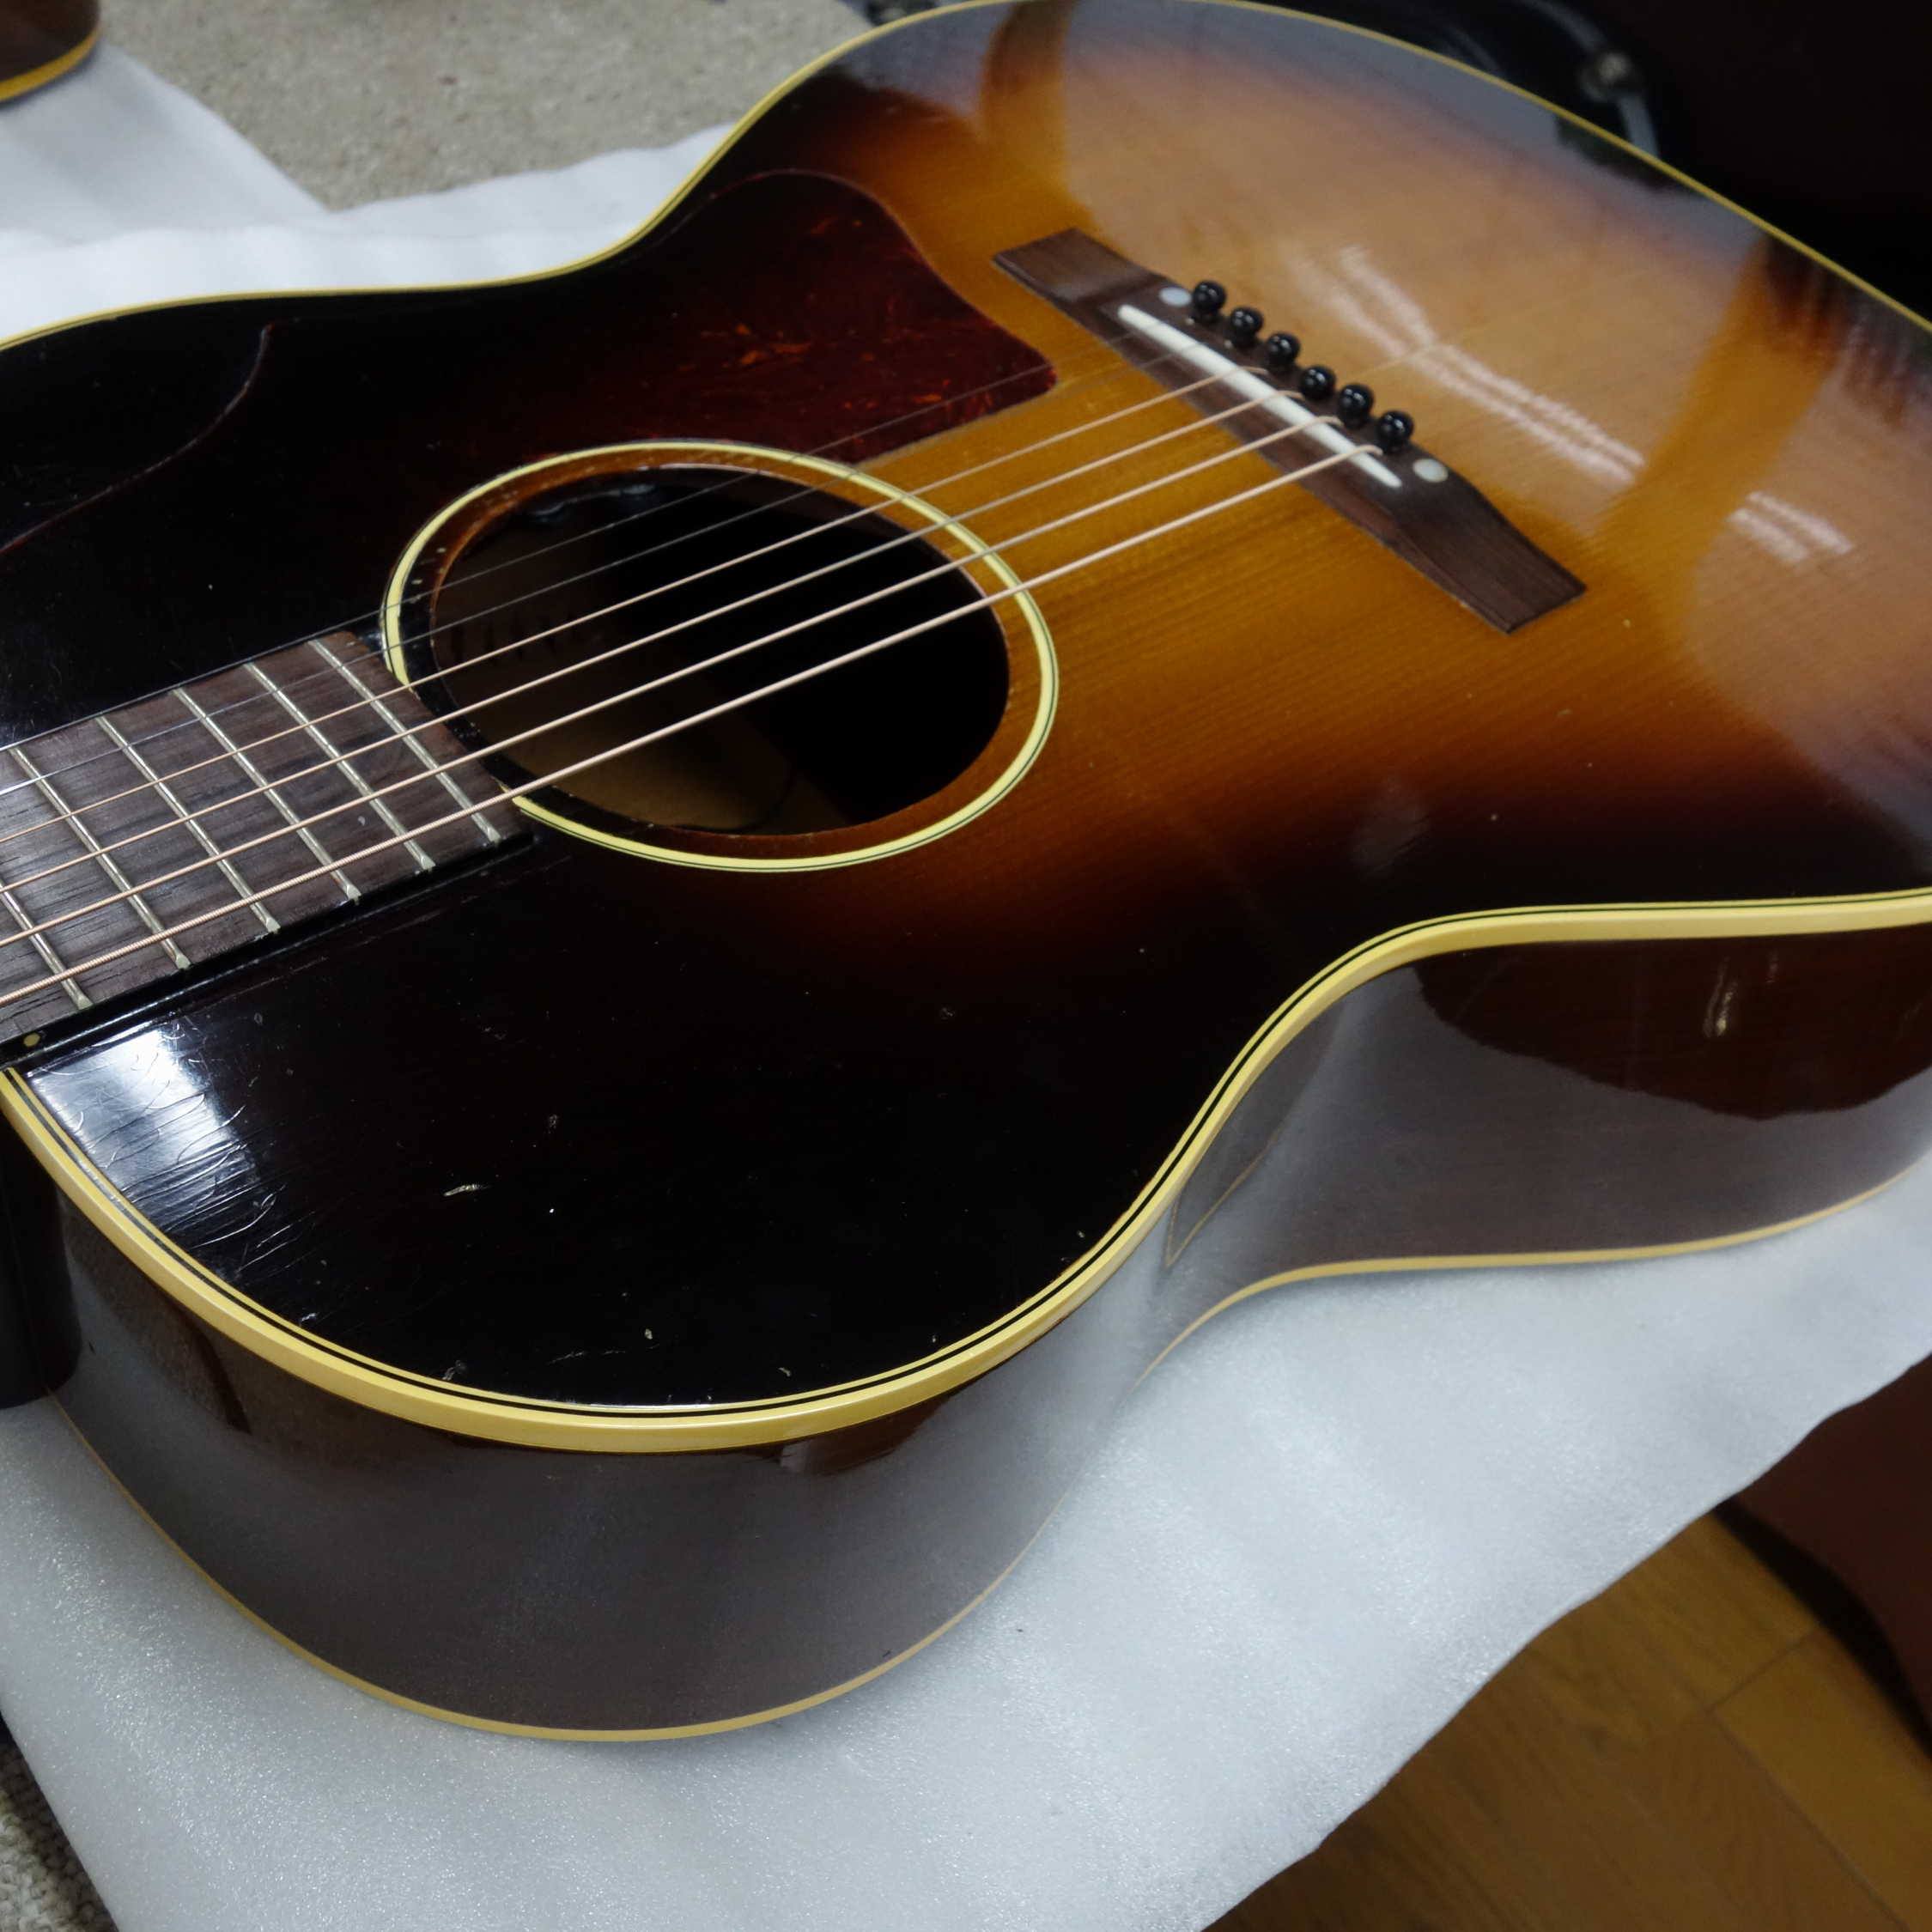 Gibson LG-2(ヘッド割れ補修)